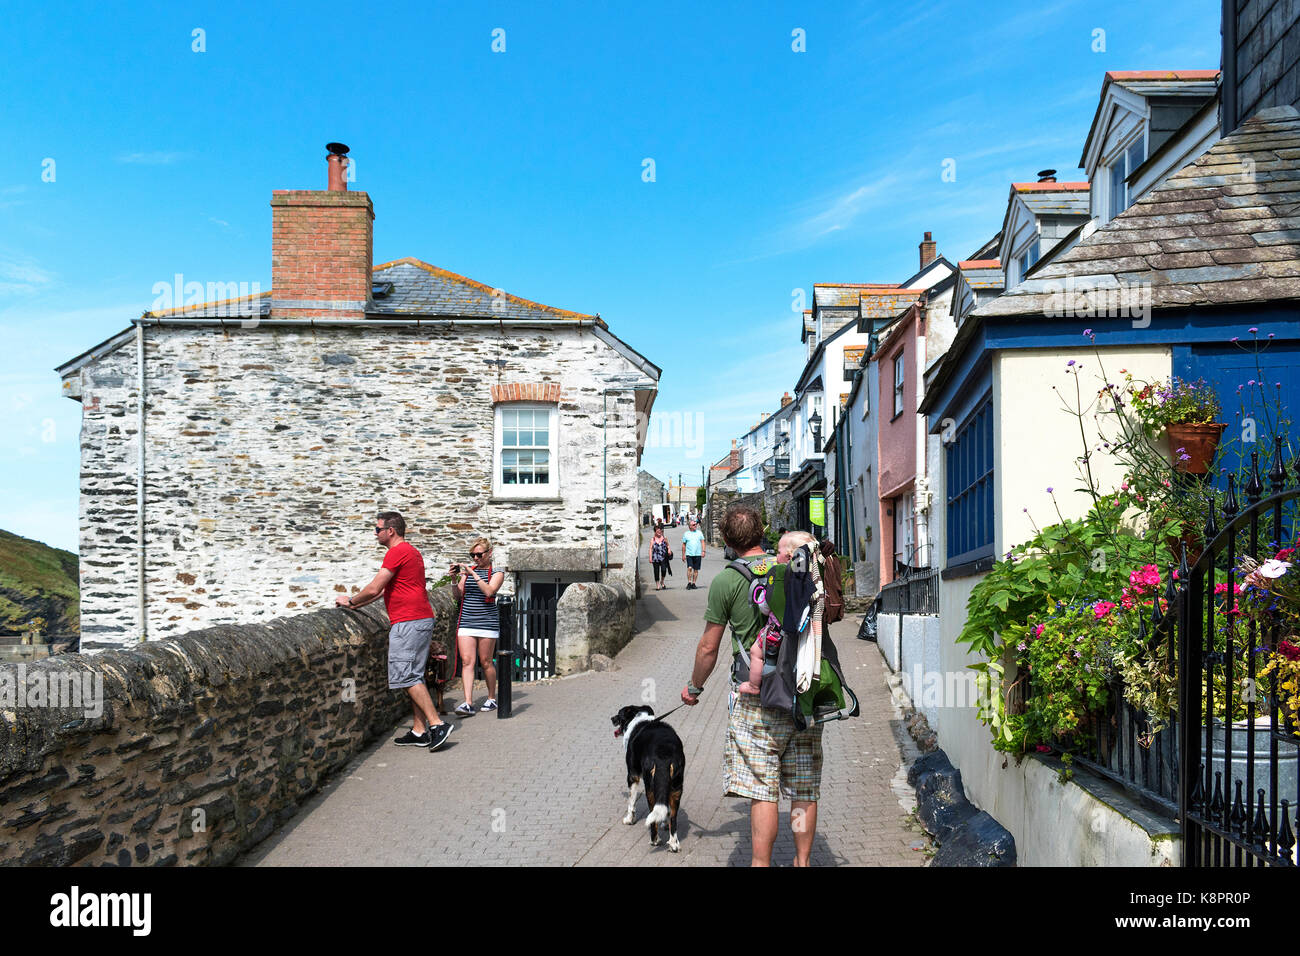 Das Dorf von Tintagel in Cornwall, England, Großbritannien, Großbritannien, dieses schöne Küsten villge wird regelmäßig als Drehort für hit Fernsehen ser verwendet Stockfoto